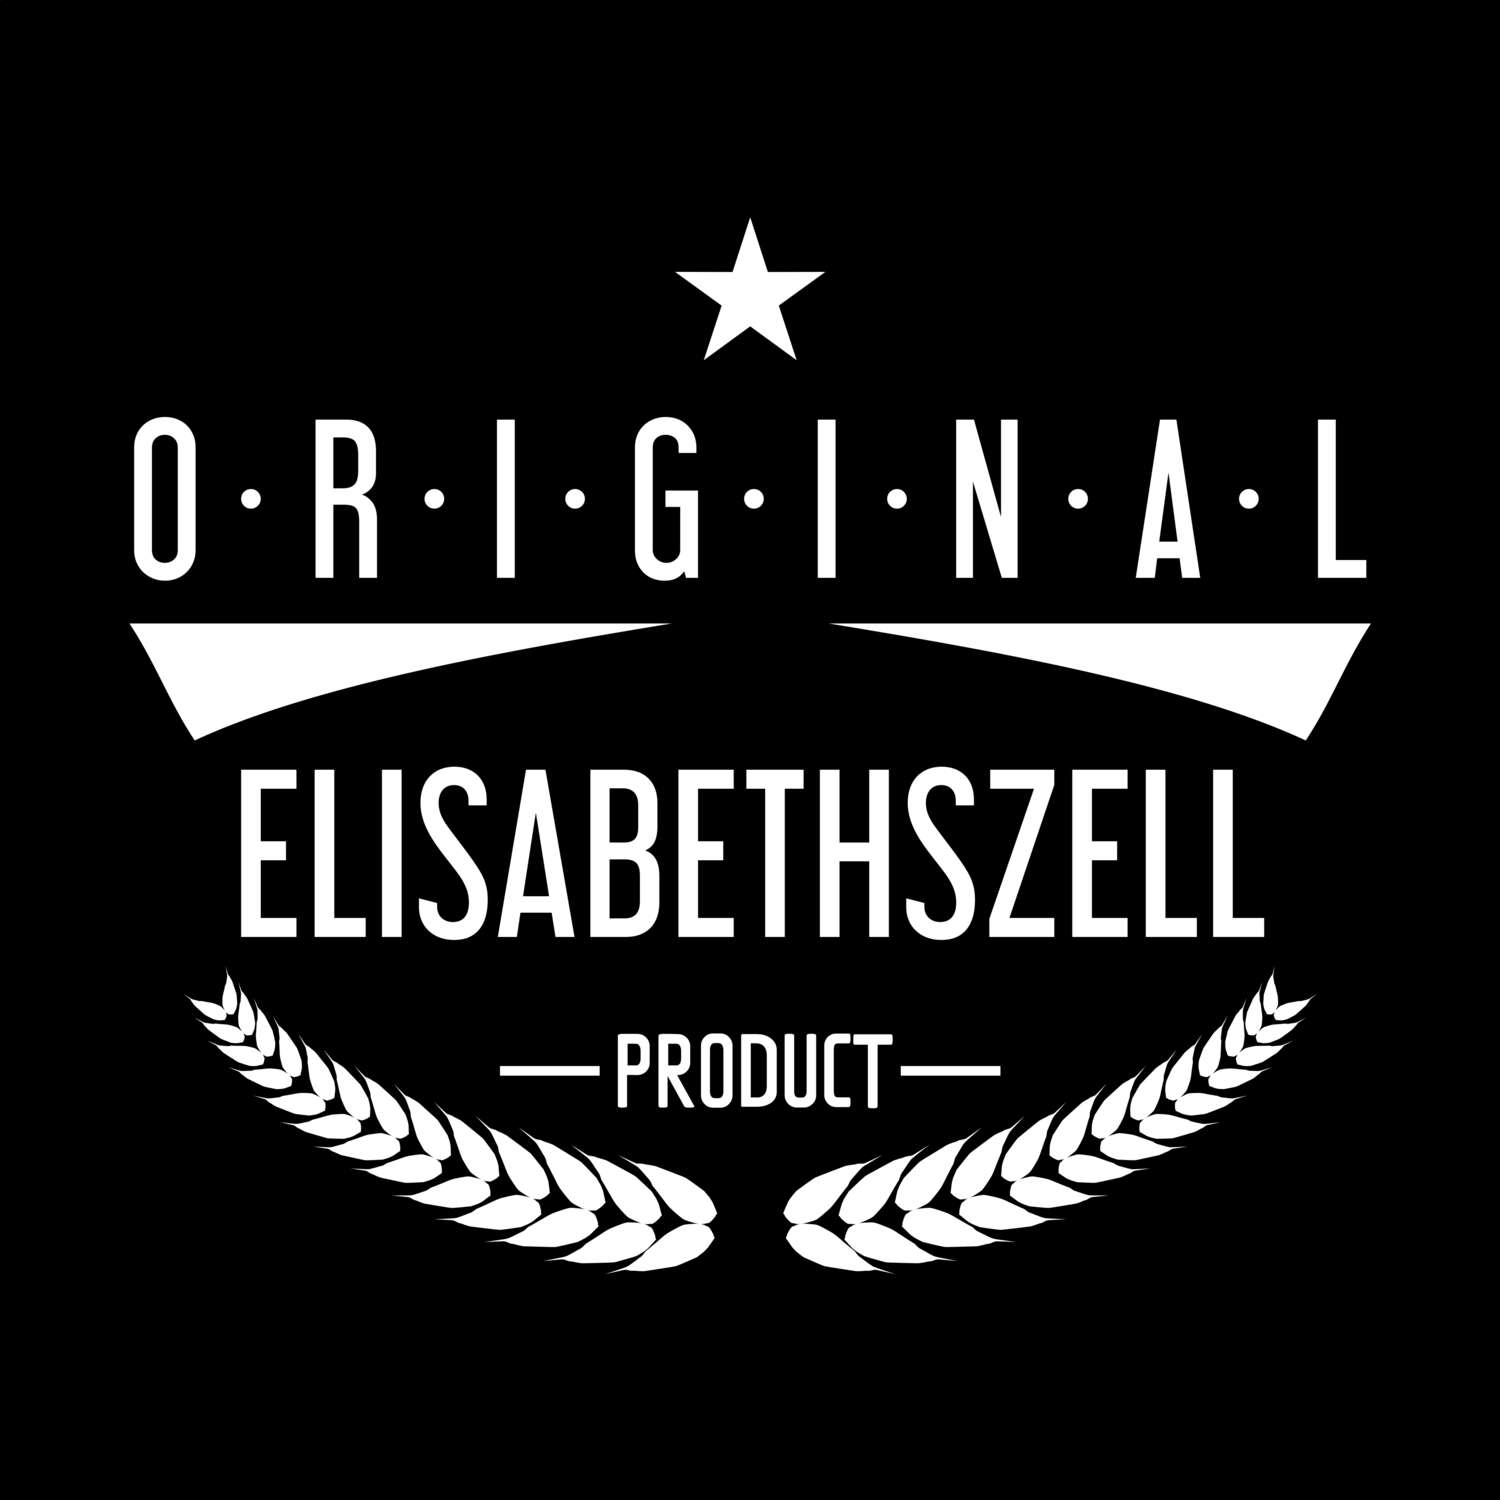 Elisabethszell T-Shirt »Original Product«